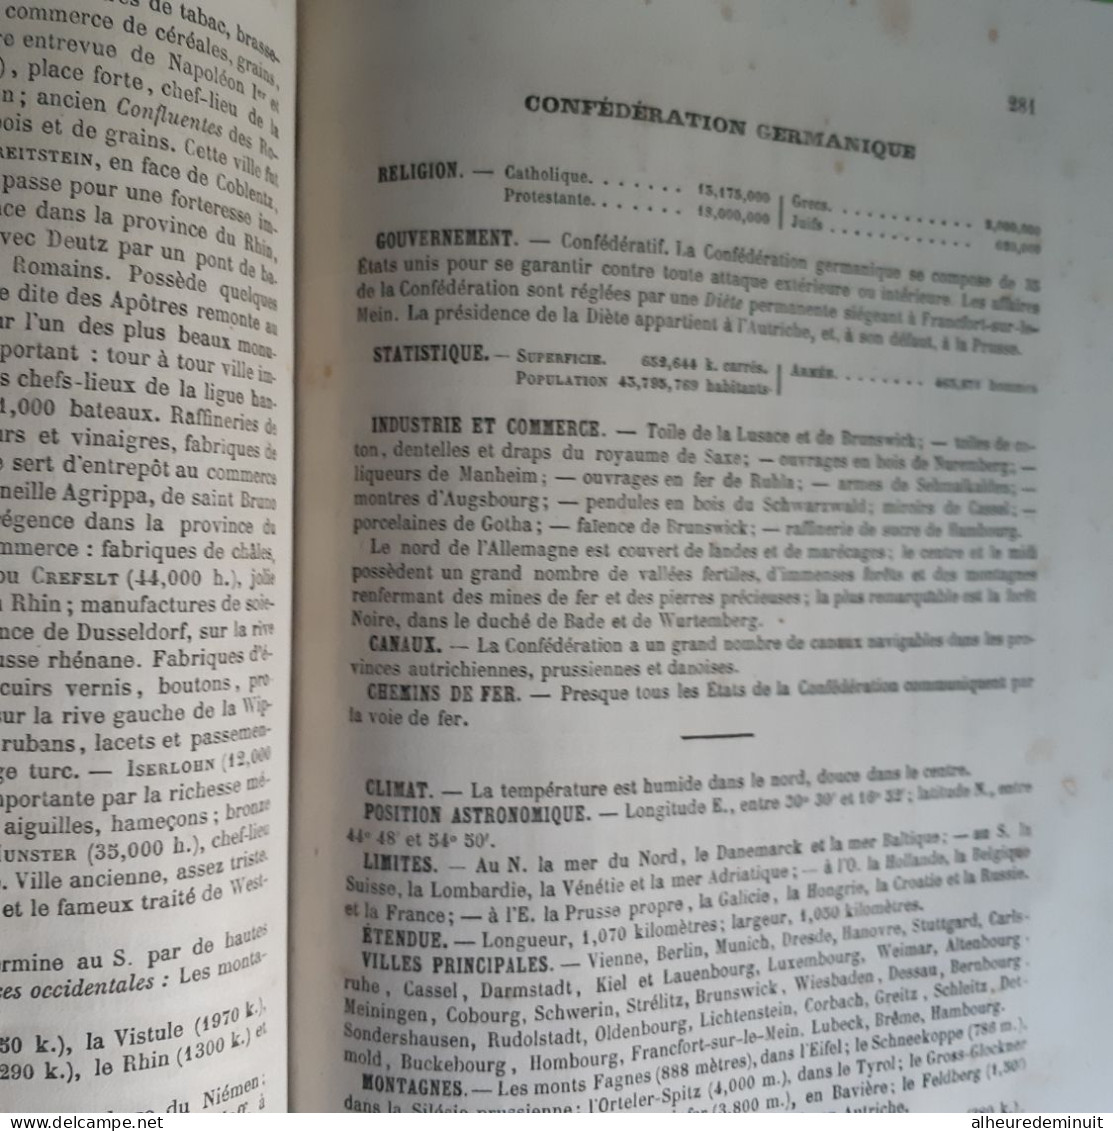 Livre ancien NOUVELLES METHODES"LECTURE ECRITURE CALCUL GRAMMAIRE GEOGRAPHIE HISTOIRE"REDU.J"1865"patronage NAPOLEON 3